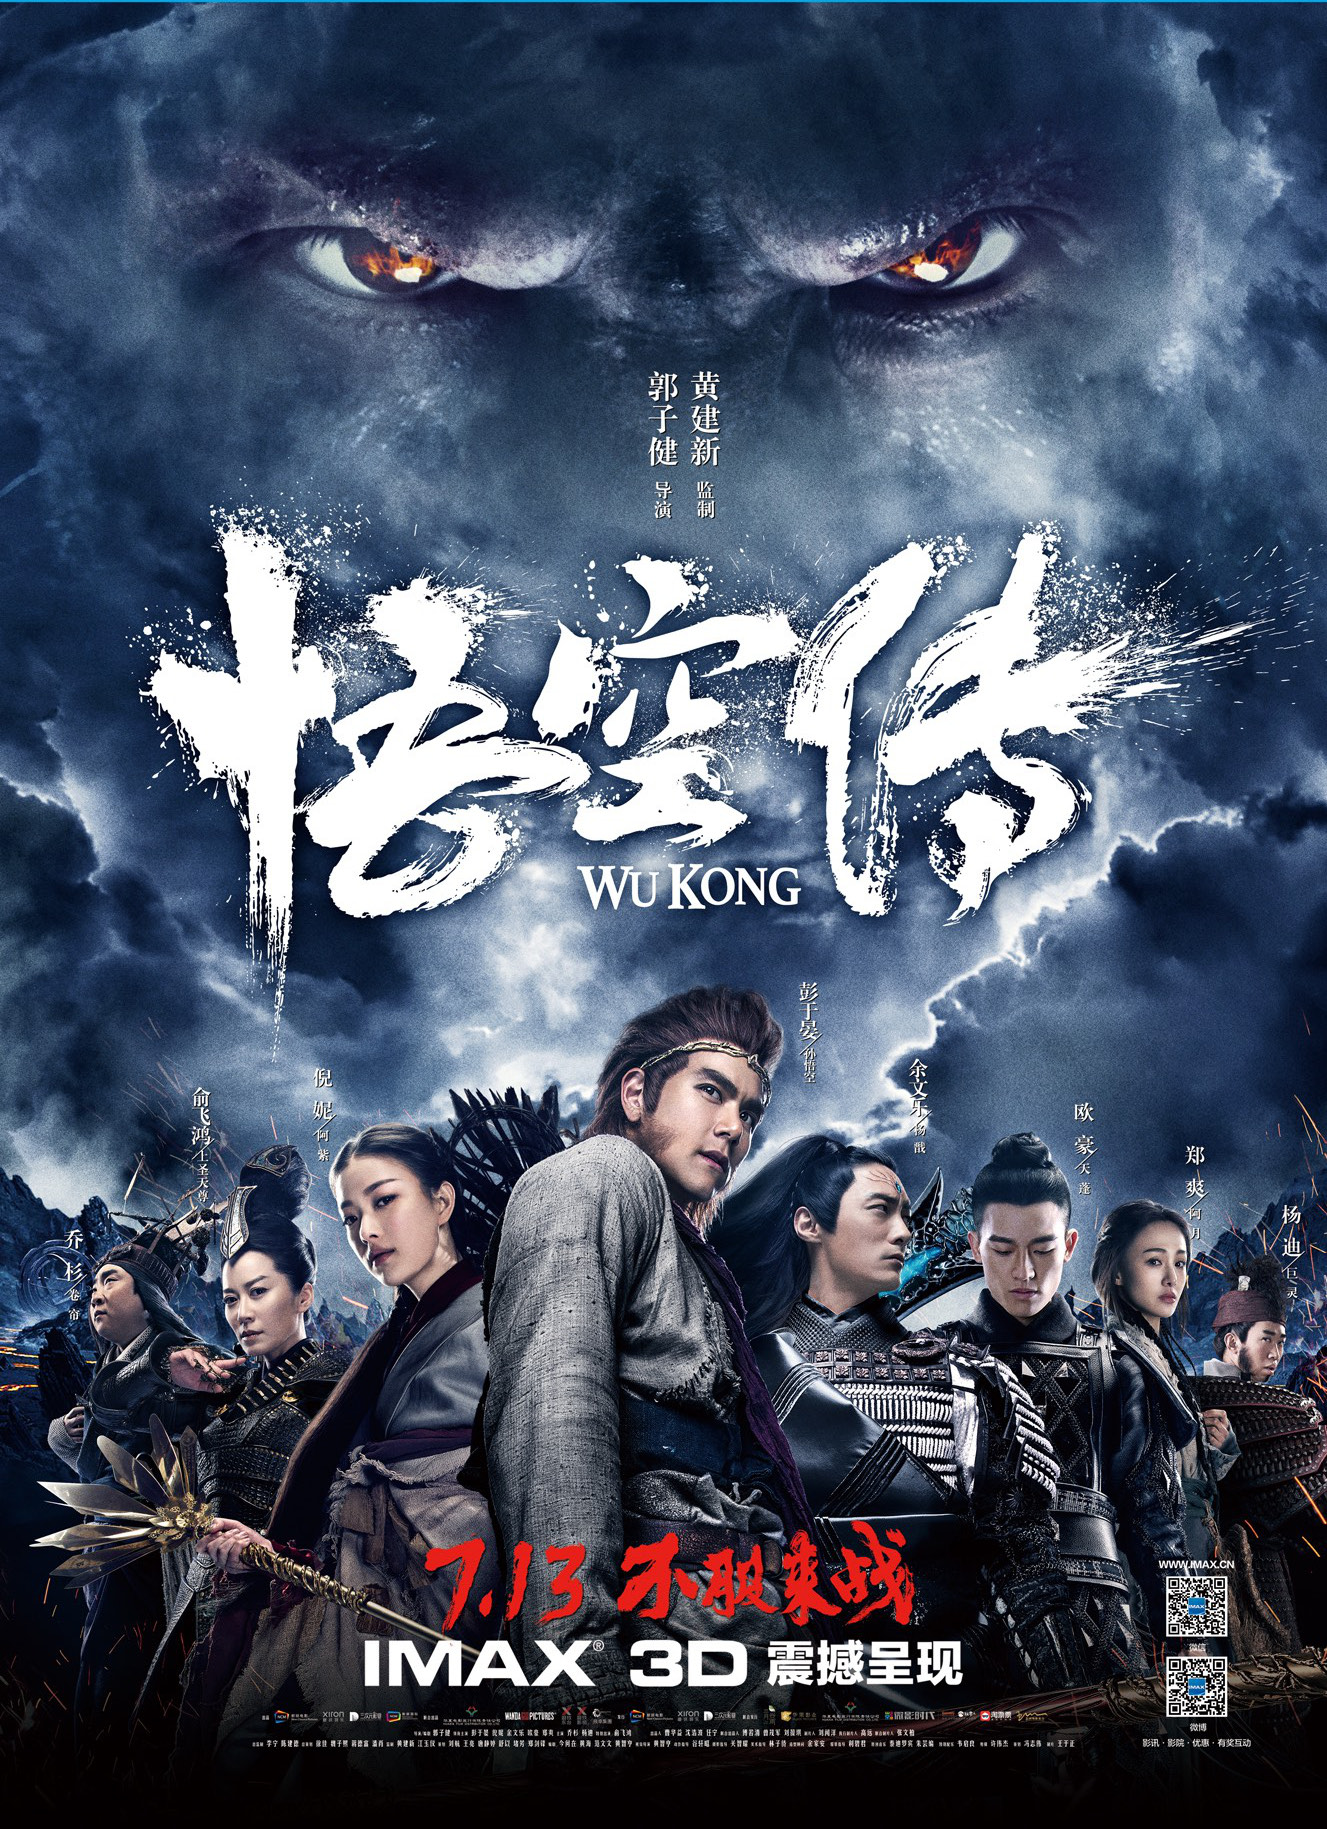 ดูหนังออนไลน์ฟรี WUKONG (2017) หงอคง กำเนิดเทพเจ้าวานร